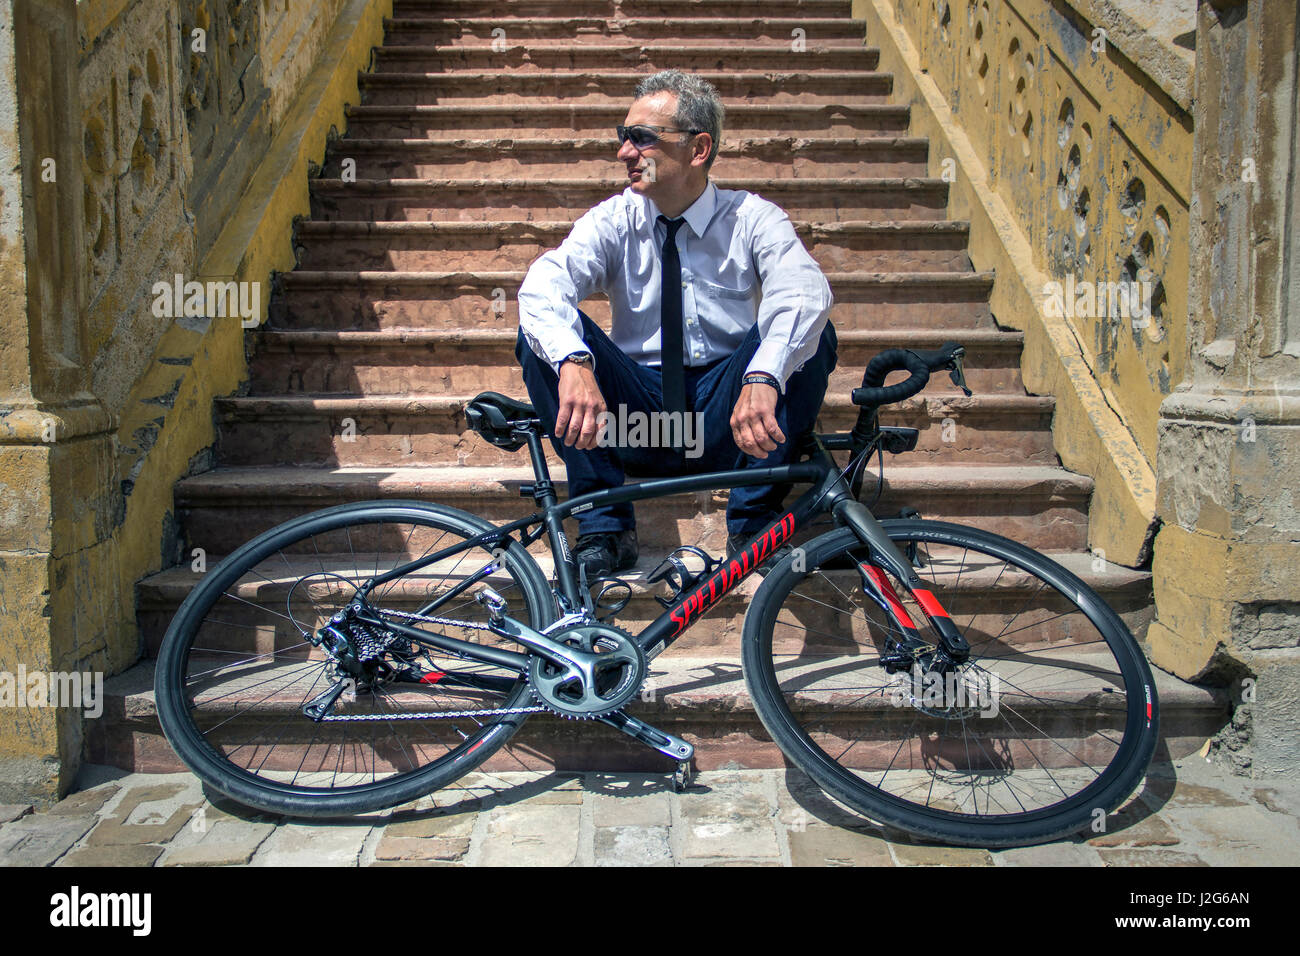 Belgrado, Serbia - Ciclista posando en una escalera detrás de su bicicleta. Foto de stock